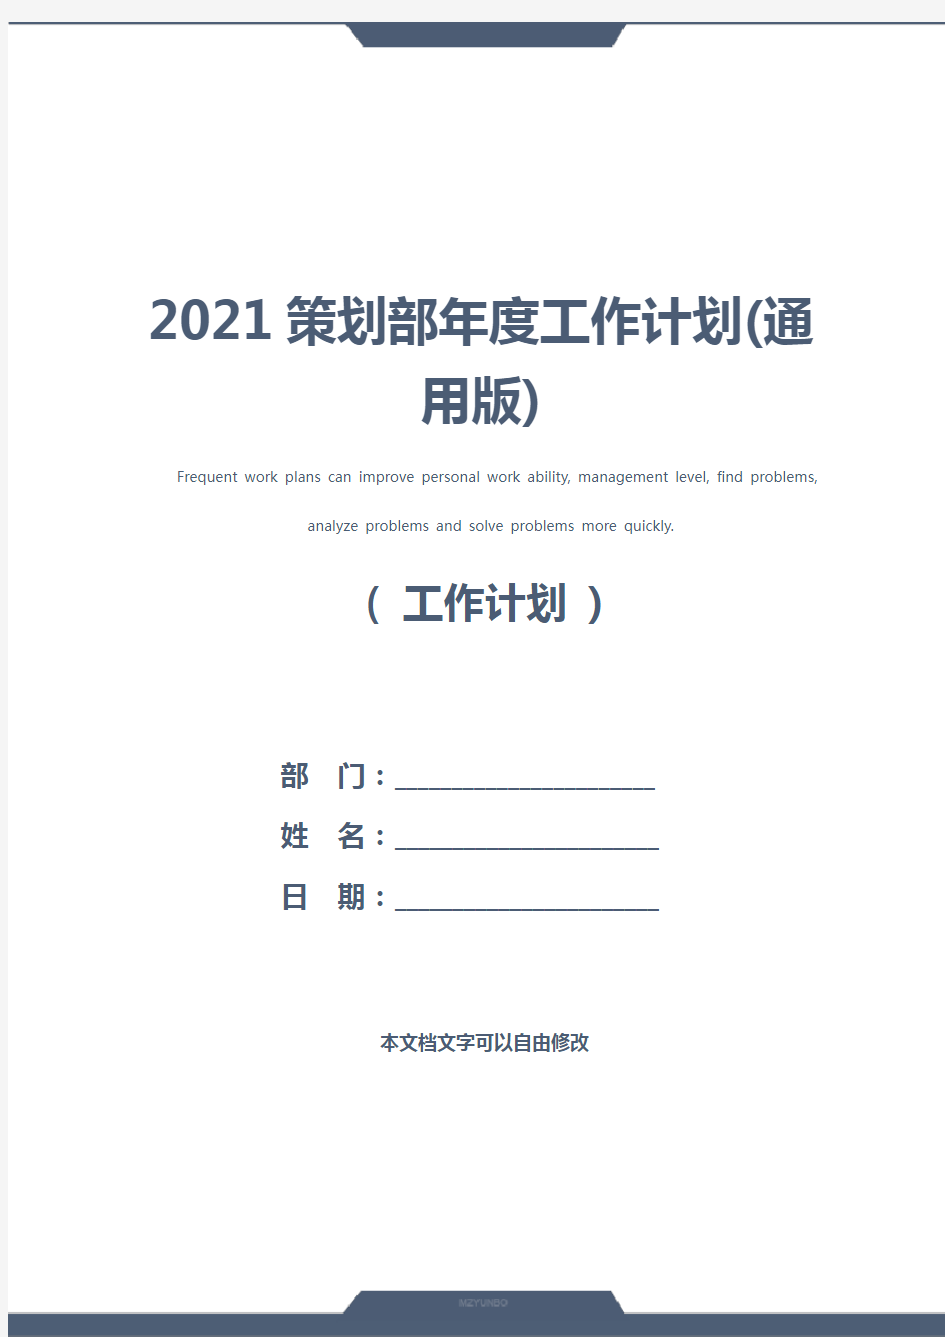 2021策划部年度工作计划(通用版)